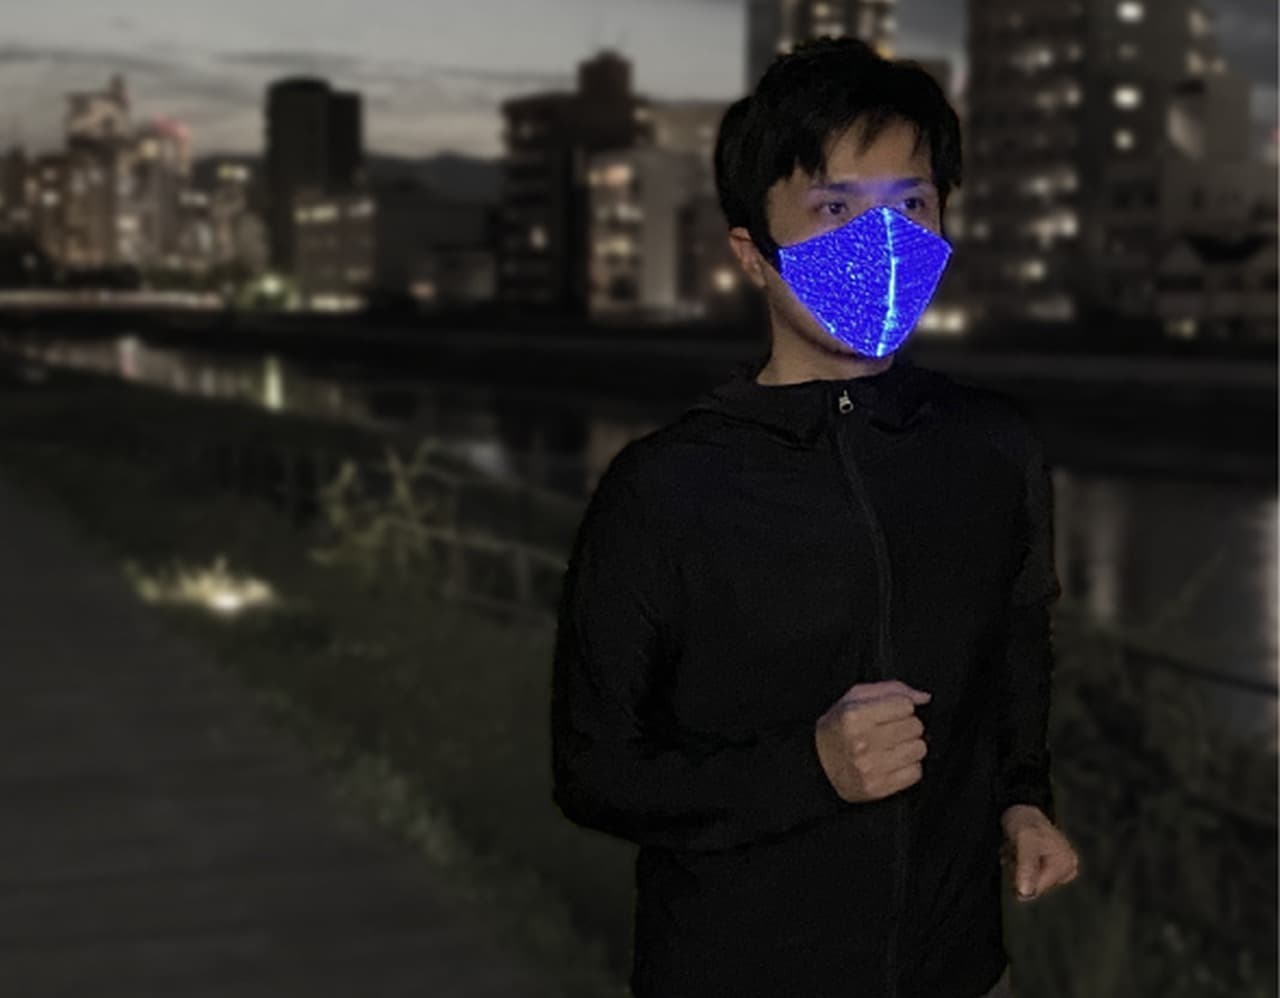  夜間のジョギングなどで便利な「ブルーライトマスク」限定販売